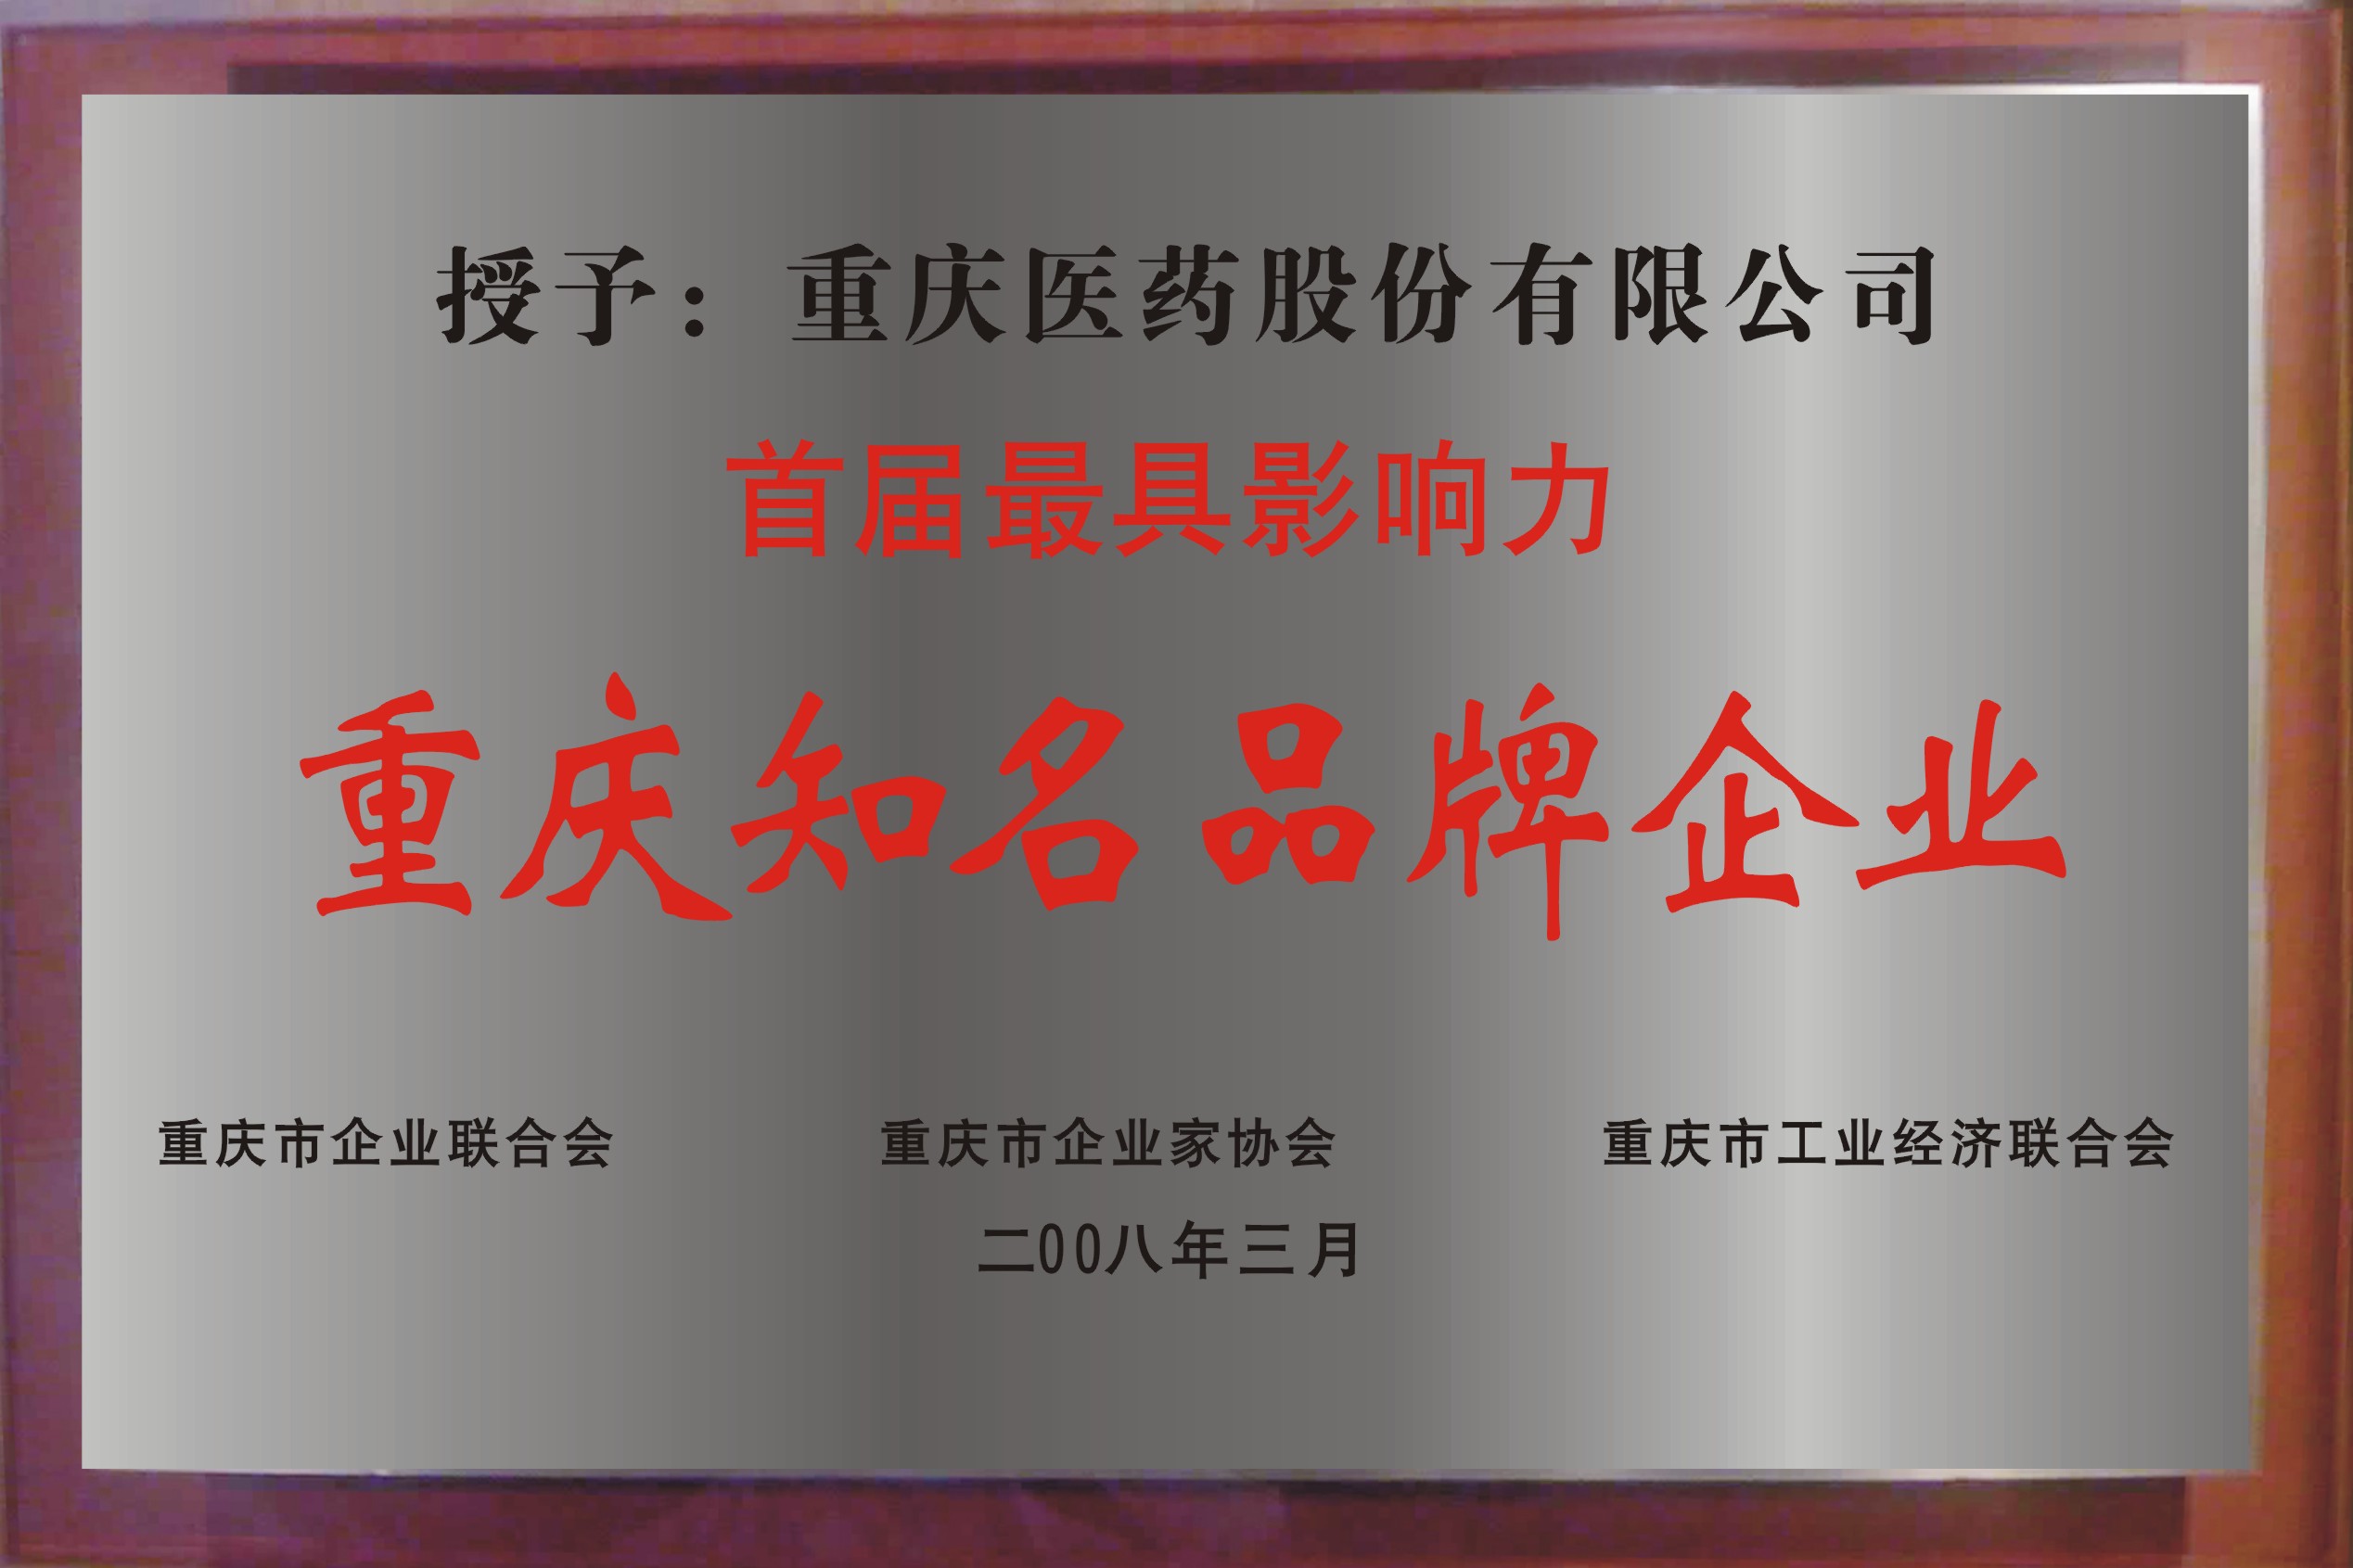 重慶和平製藥有限公司榮譽